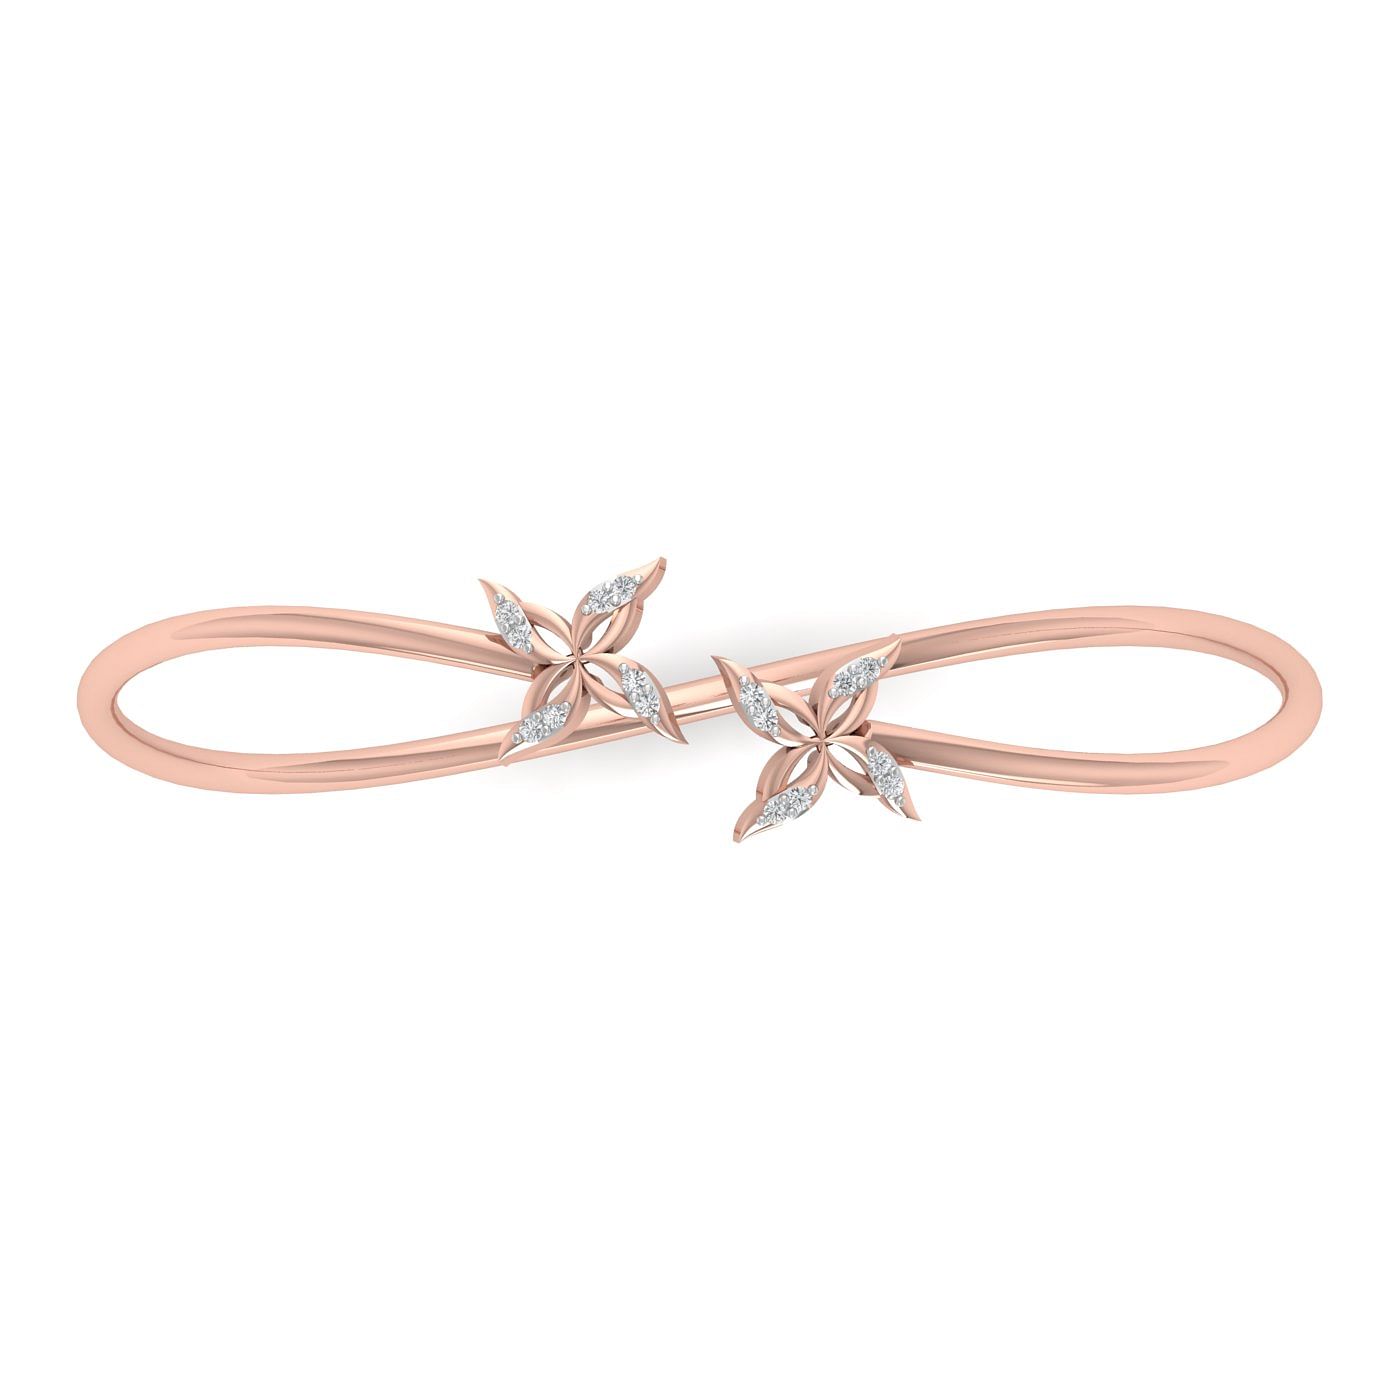 Rose gold Juliana Diamond Bracelet design for women